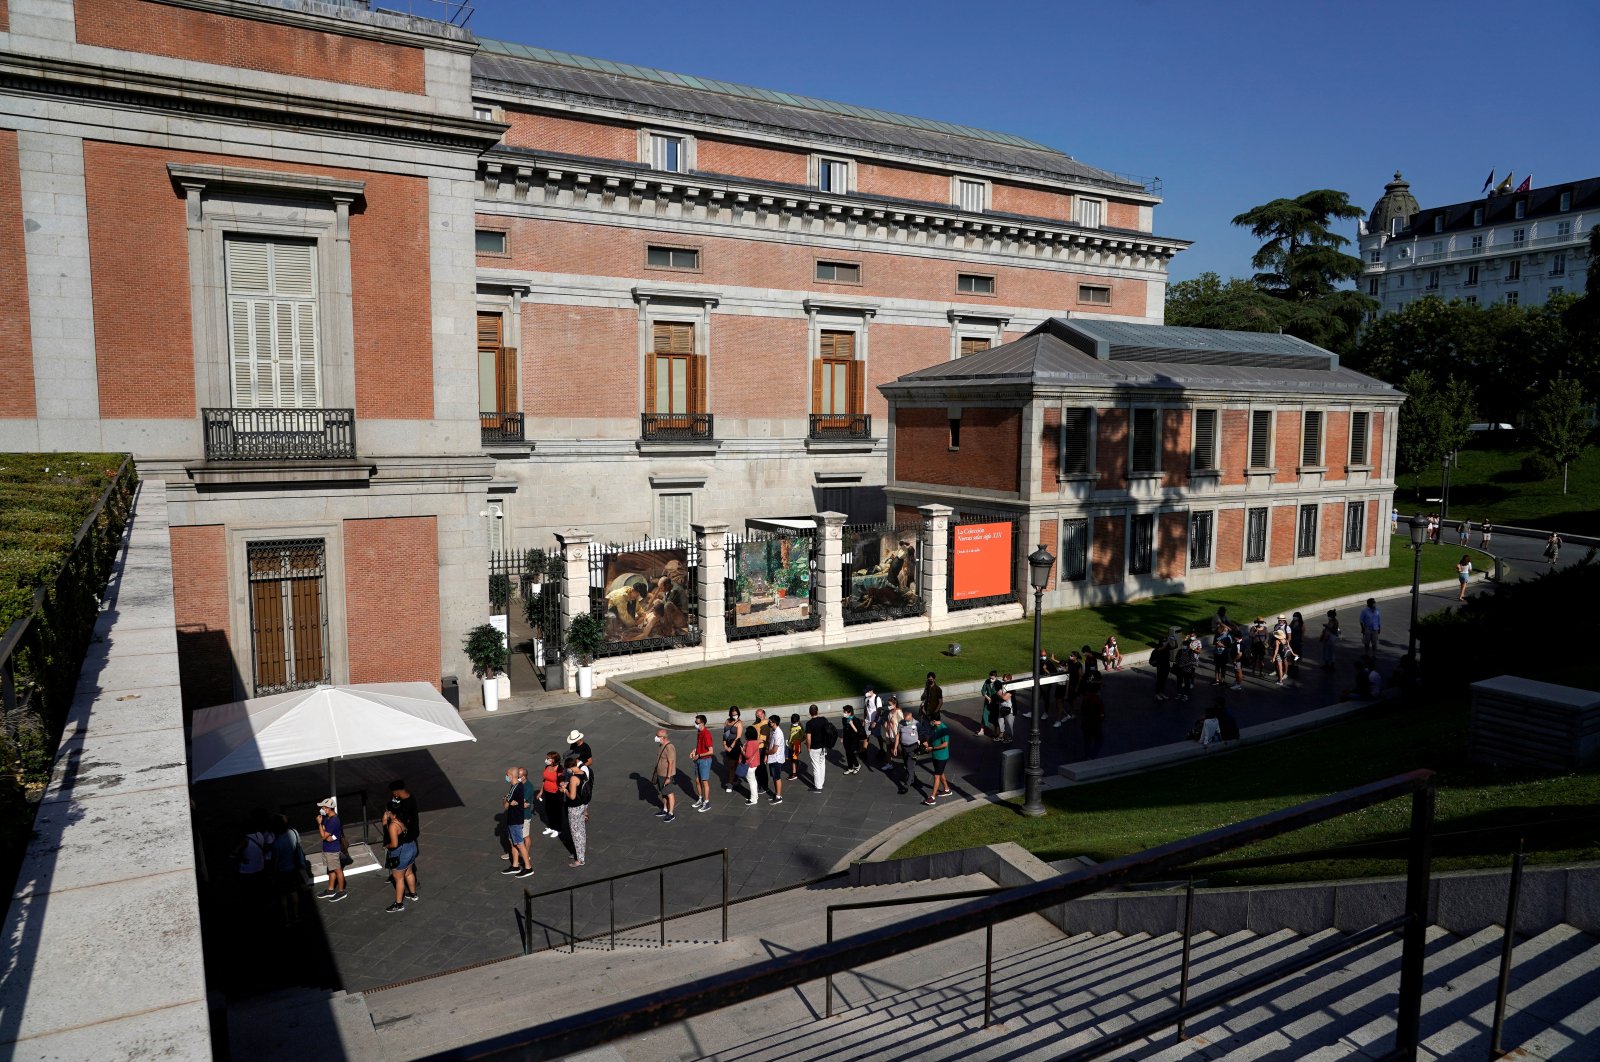 Visitors queue outside El Prado Museum in Madrid, Spain, July 21, 2021. (Reuters Photo)